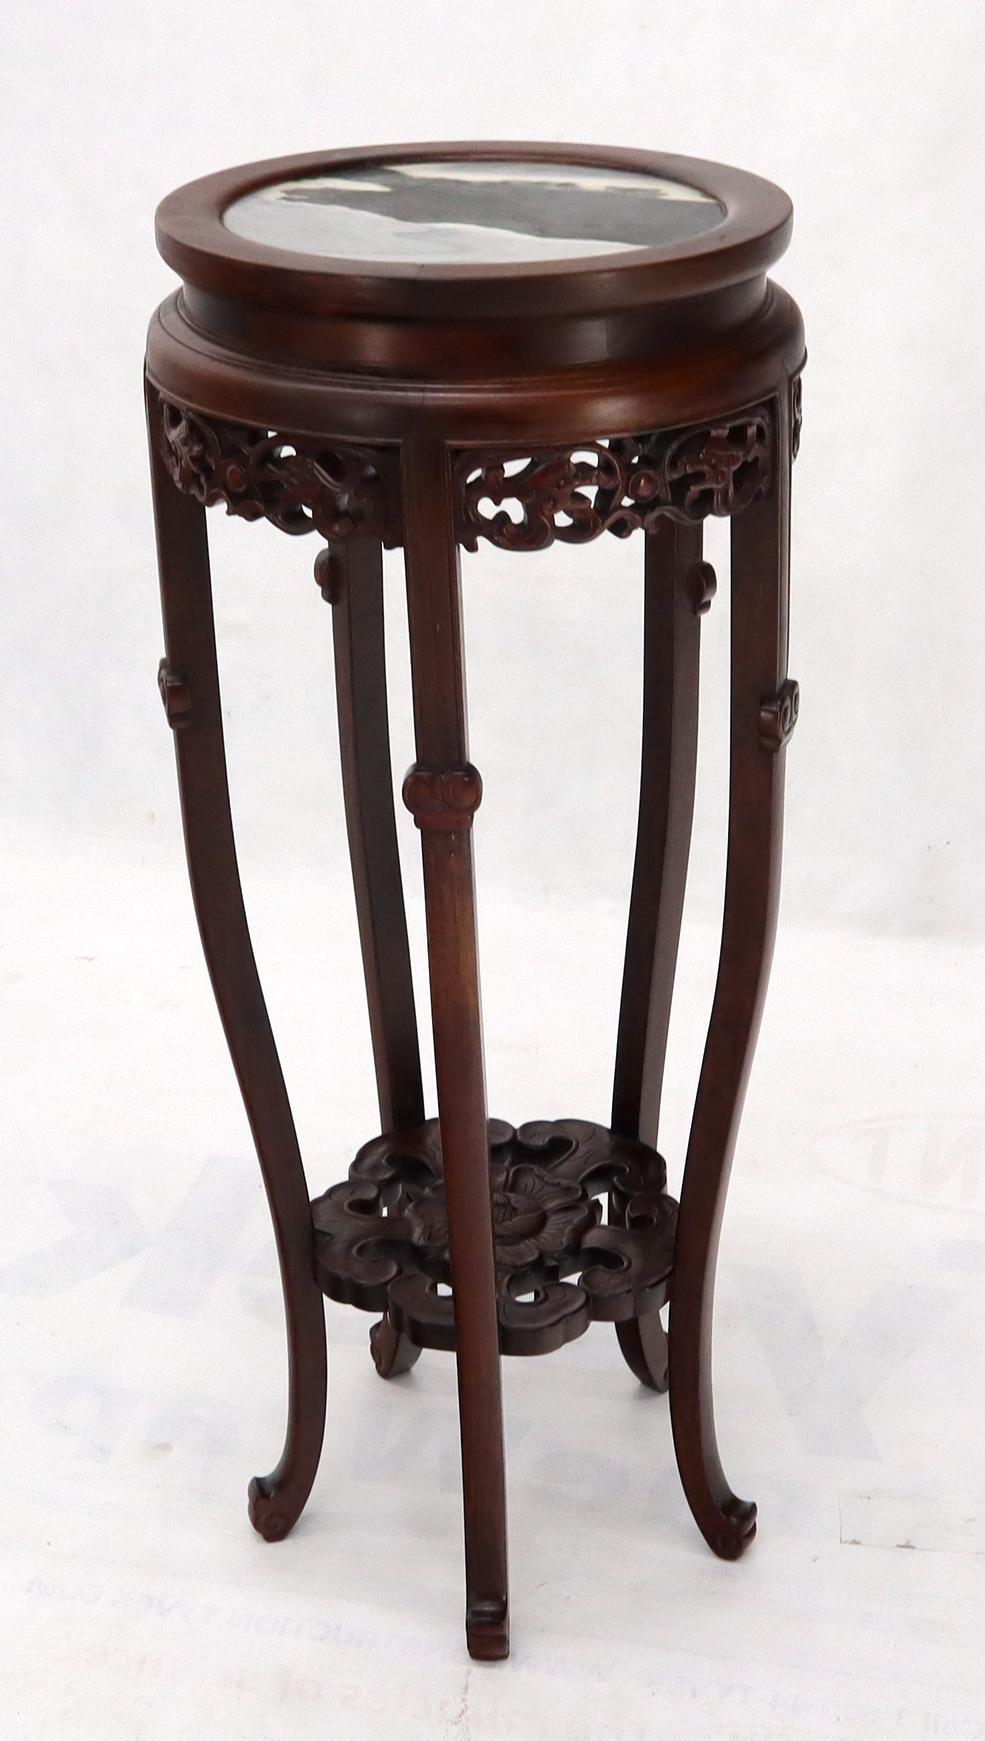 Table d'appoint en bois de rose sculpté de haute qualité, de style chinois asiatique, avec dessus en marbre.